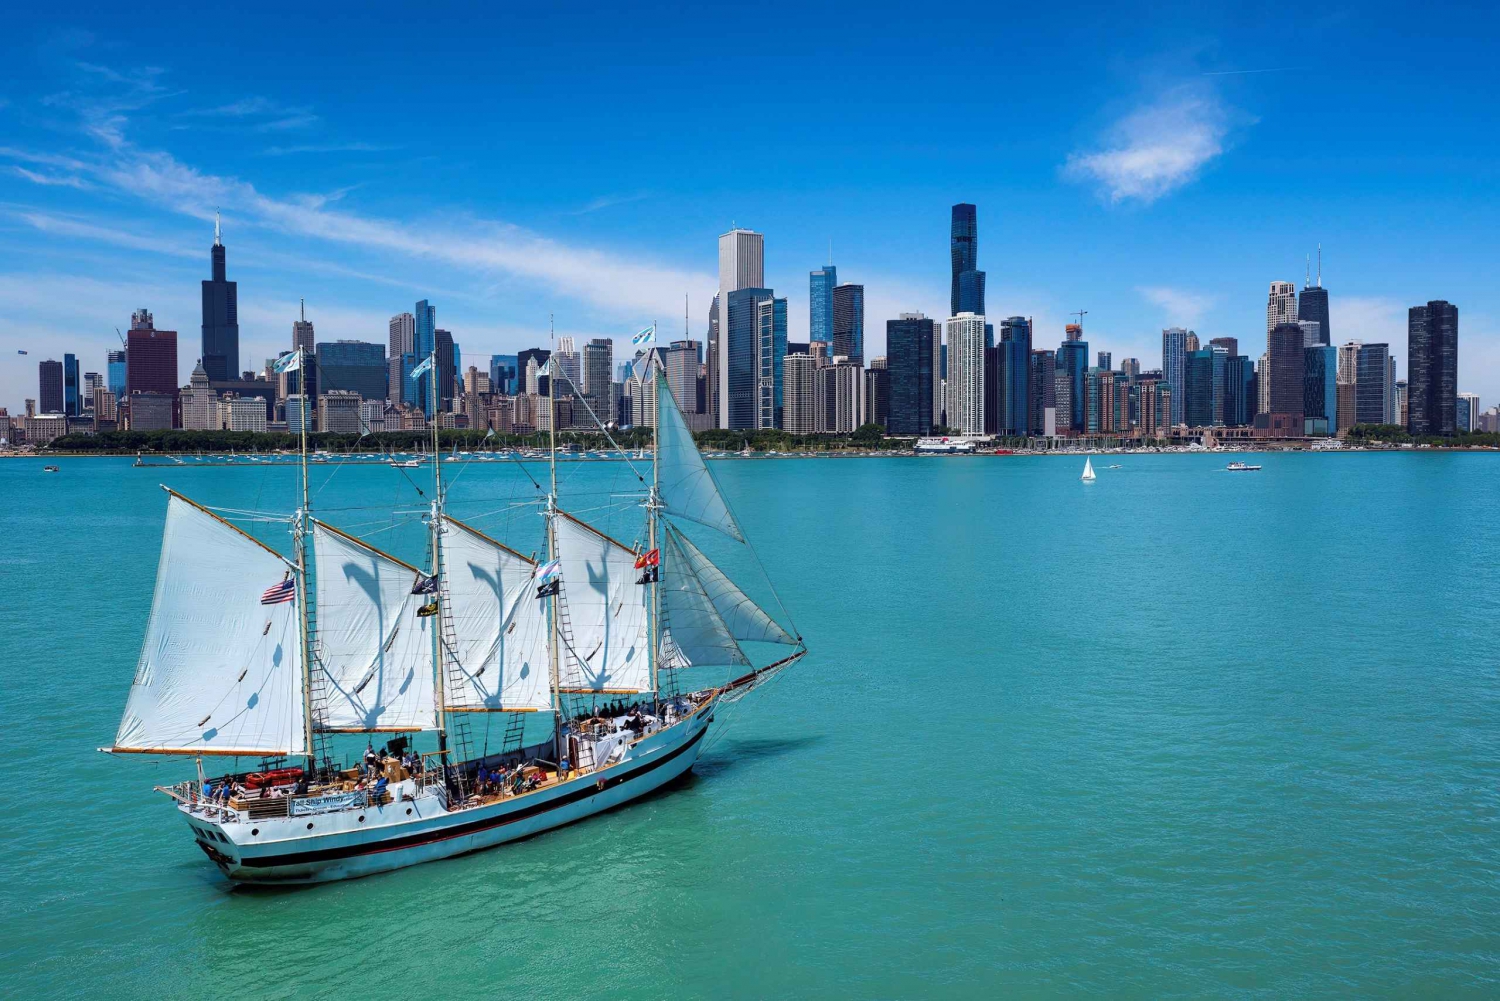 Chicago: crociera educativa 'Tall Ship Windy' sul lago Michigan